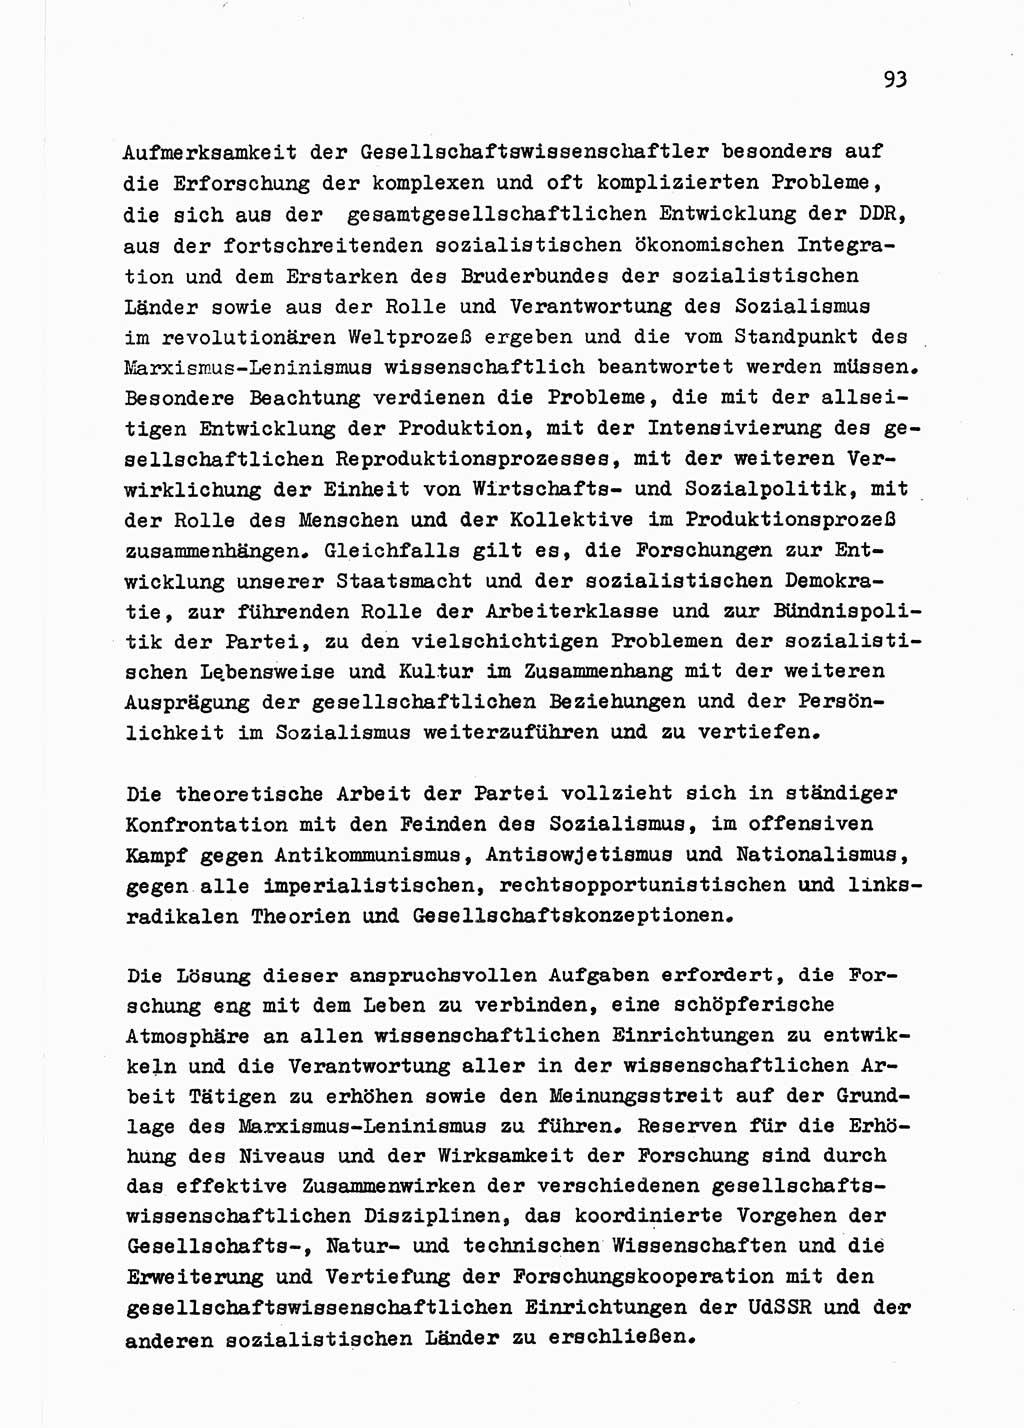 Zu Fragen der Parteiarbeit [Sozialistische Einheitspartei Deutschlands (SED) Deutsche Demokratische Republik (DDR)] 1979, Seite 93 (Fr. PA SED DDR 1979, S. 93)